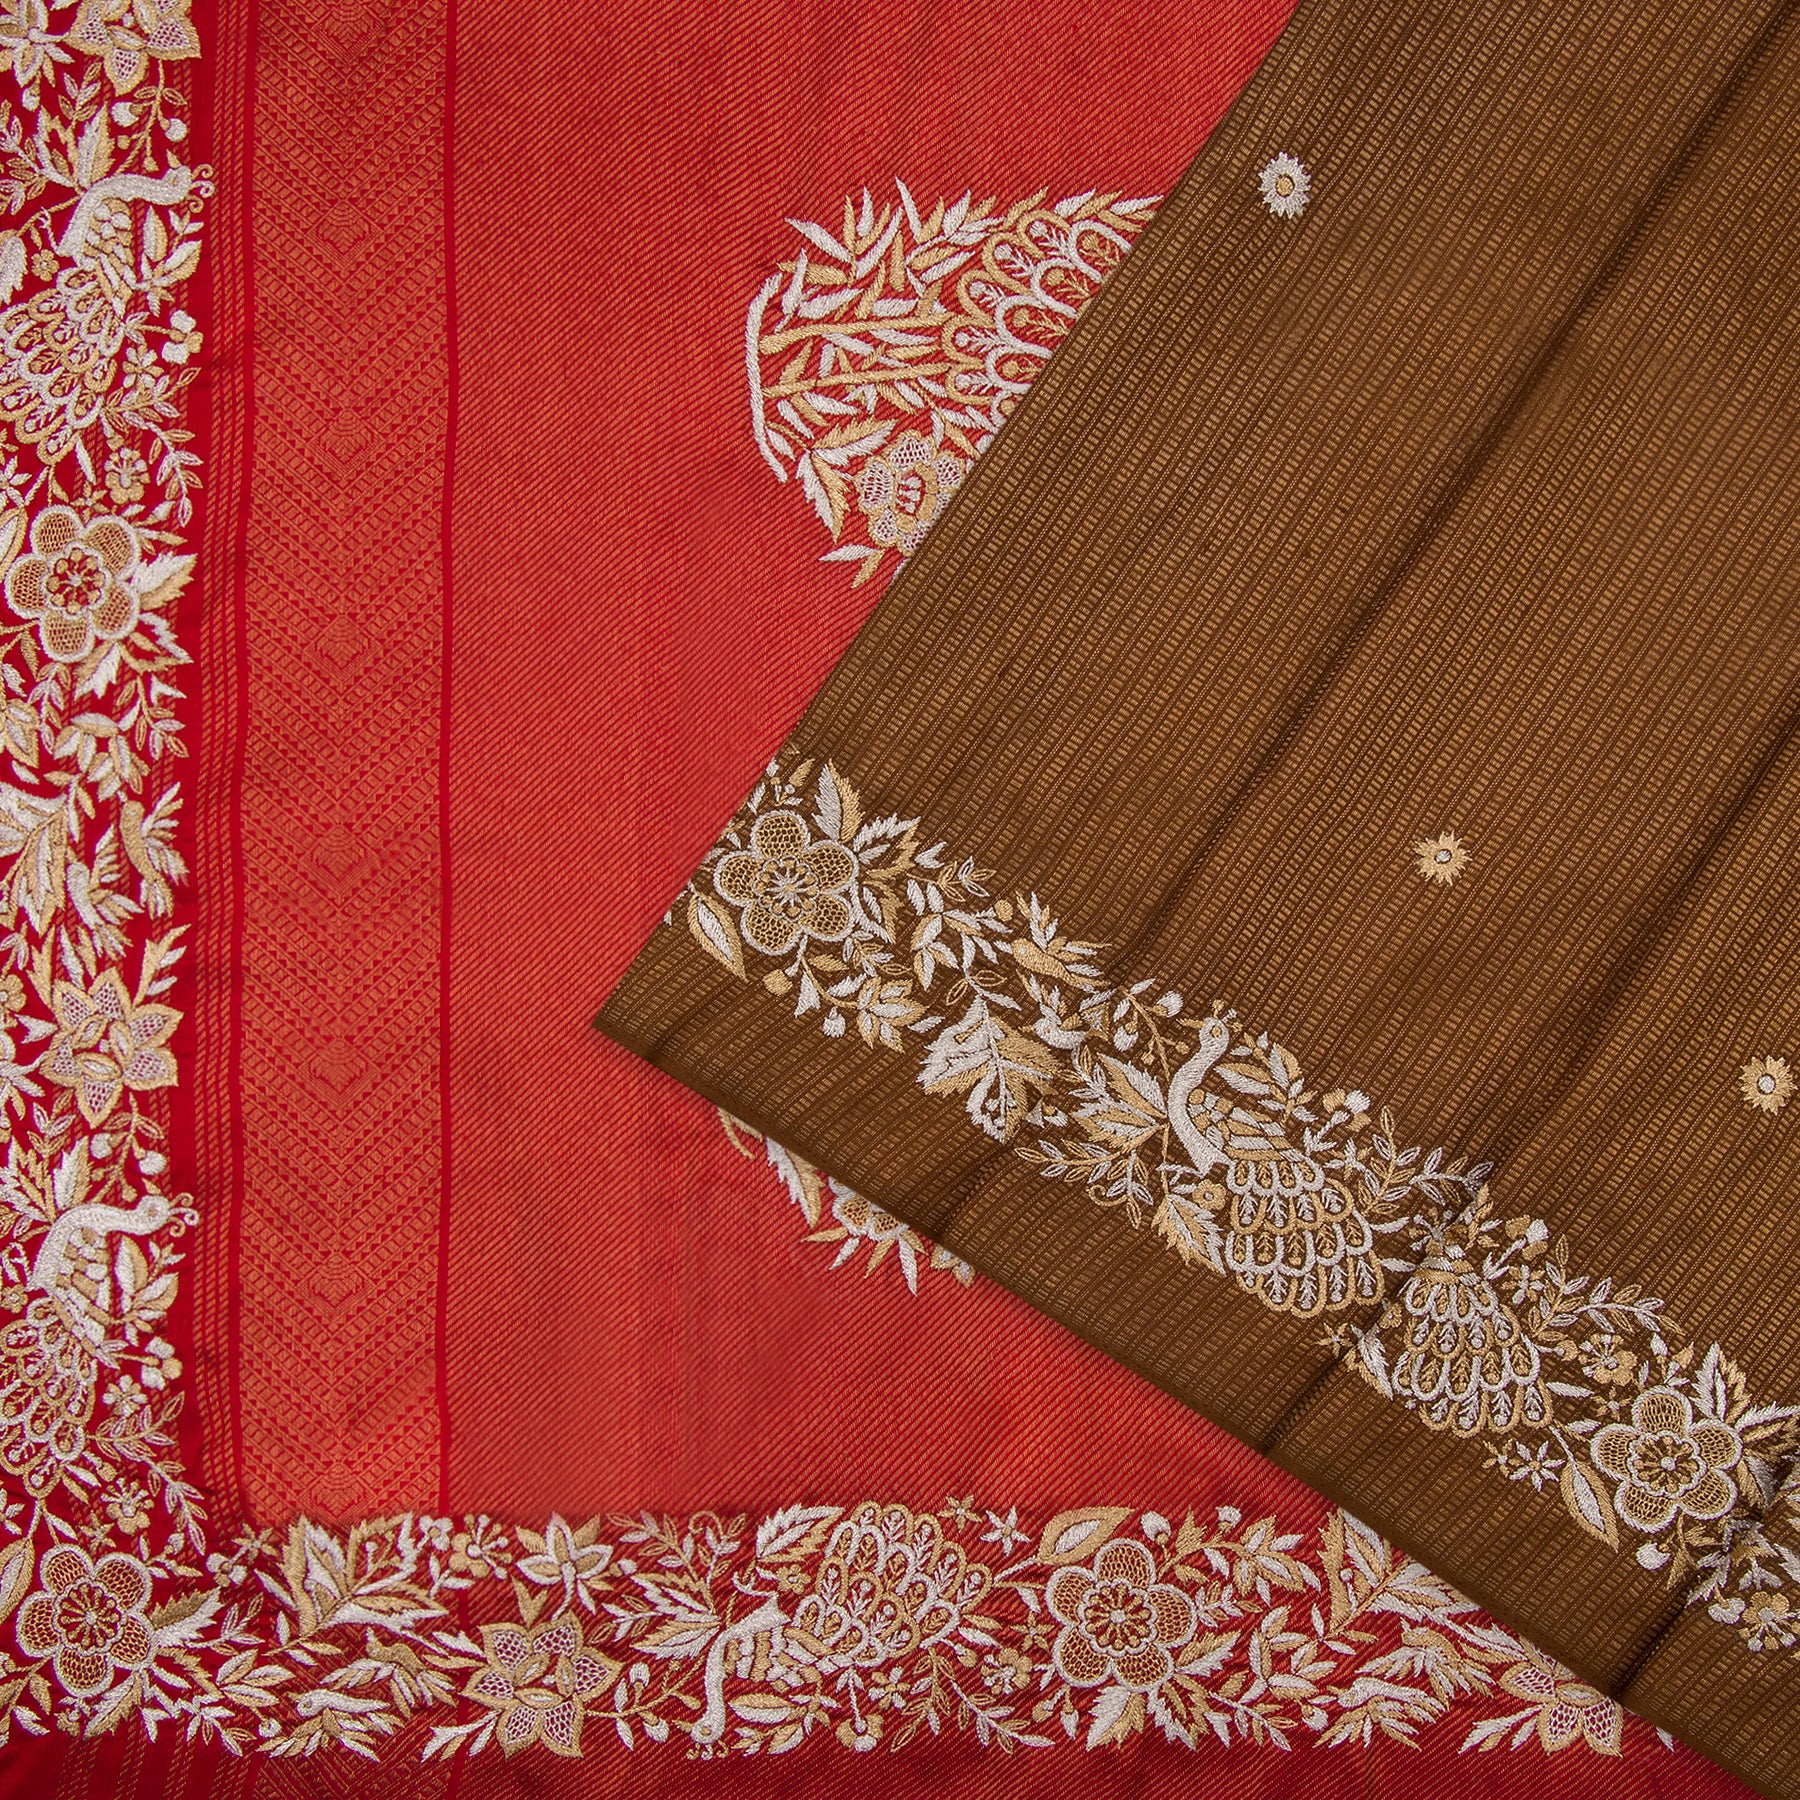 Kanakavalli X Ashdeen Kanjivaram Silk Sari 21-120-HS001-00385 - Cover View